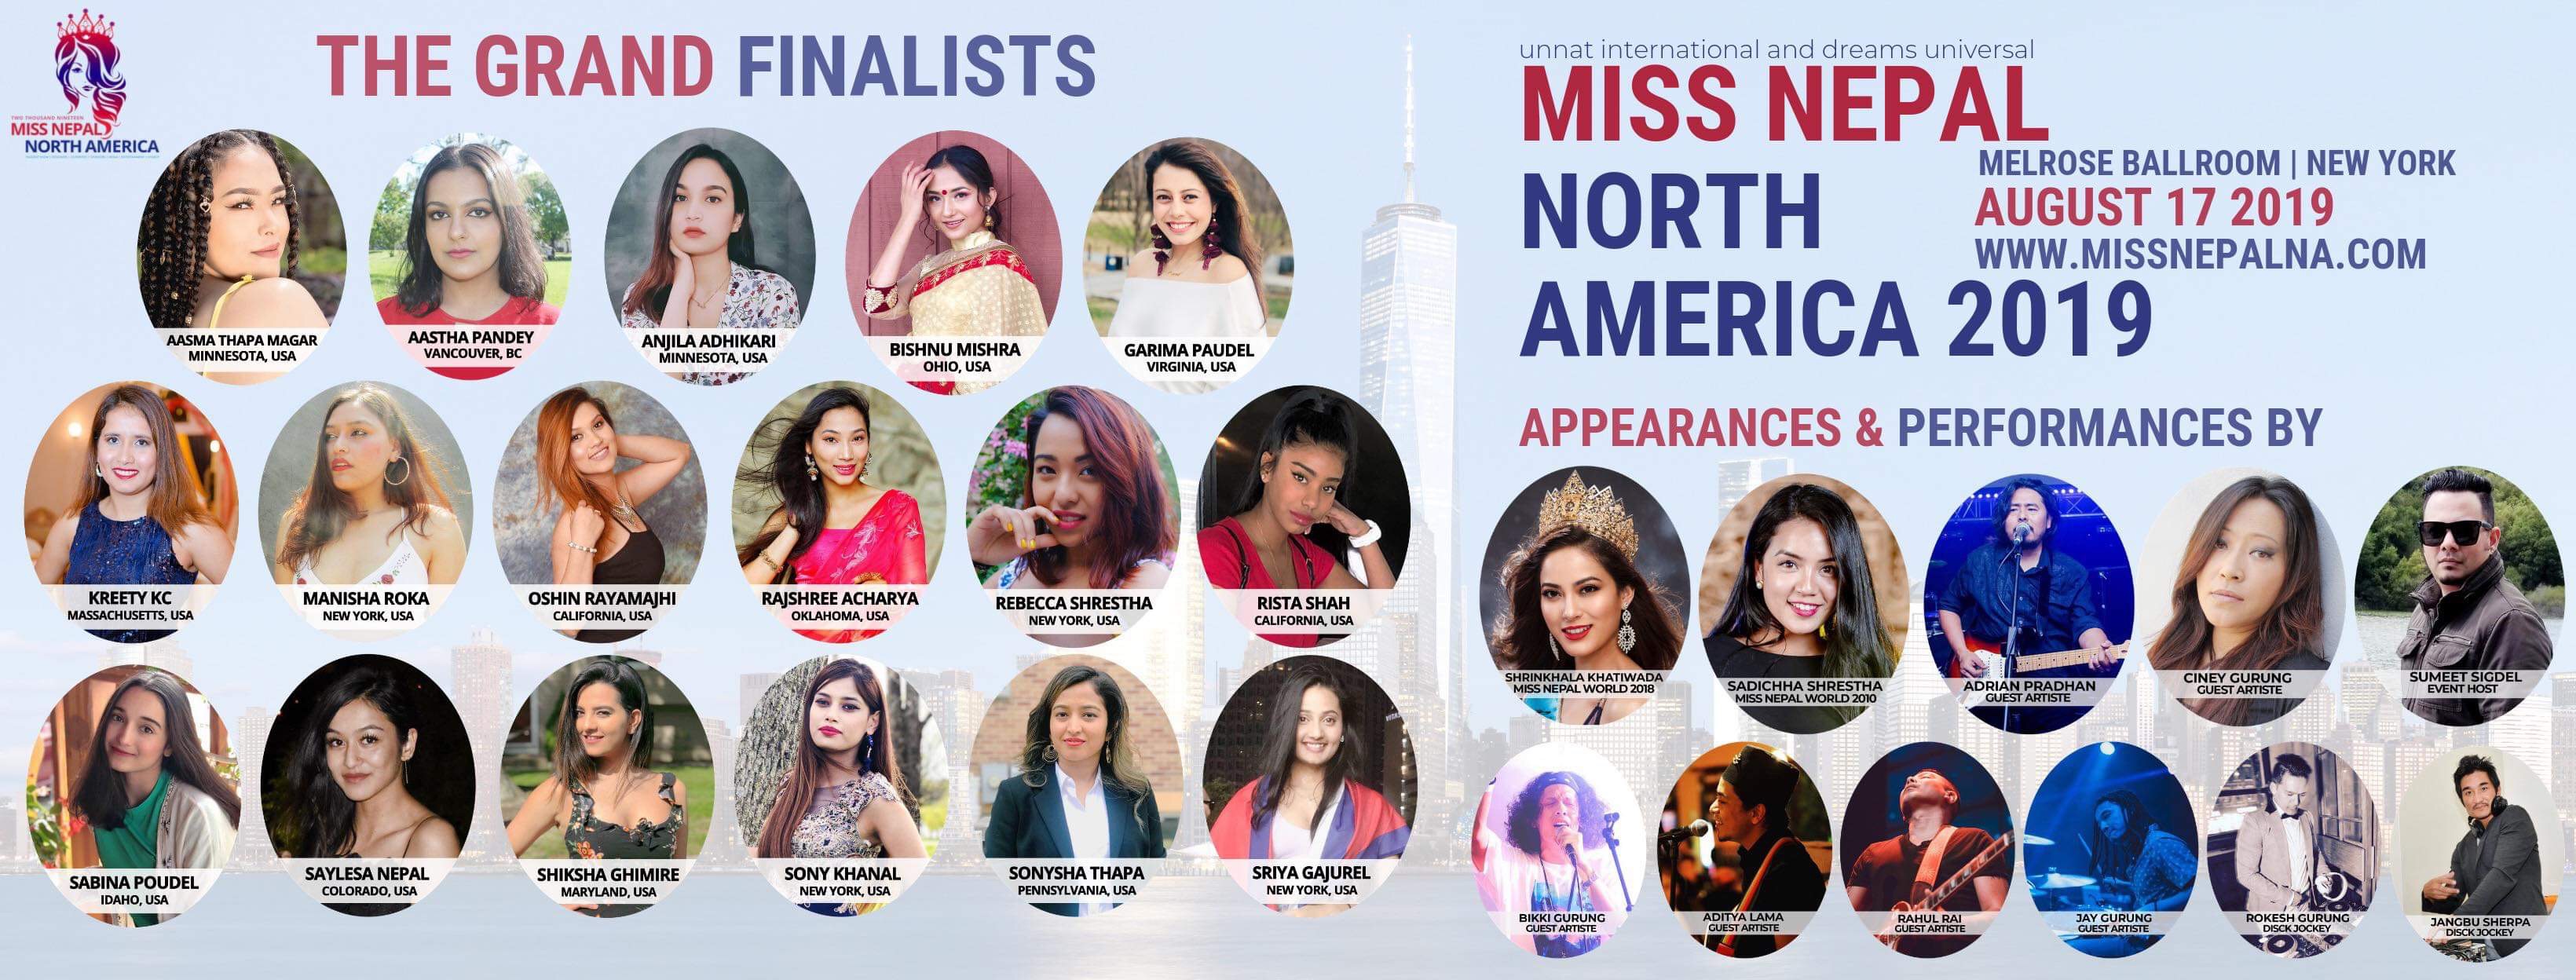 मिस नेपाल नर्थ अमेरिकाको अन्तिम १७ प्रतियोगी छनौट, शृंखला खतिवडा लगायतको सहभागिता साथै सांगीतिक प्रस्तुति